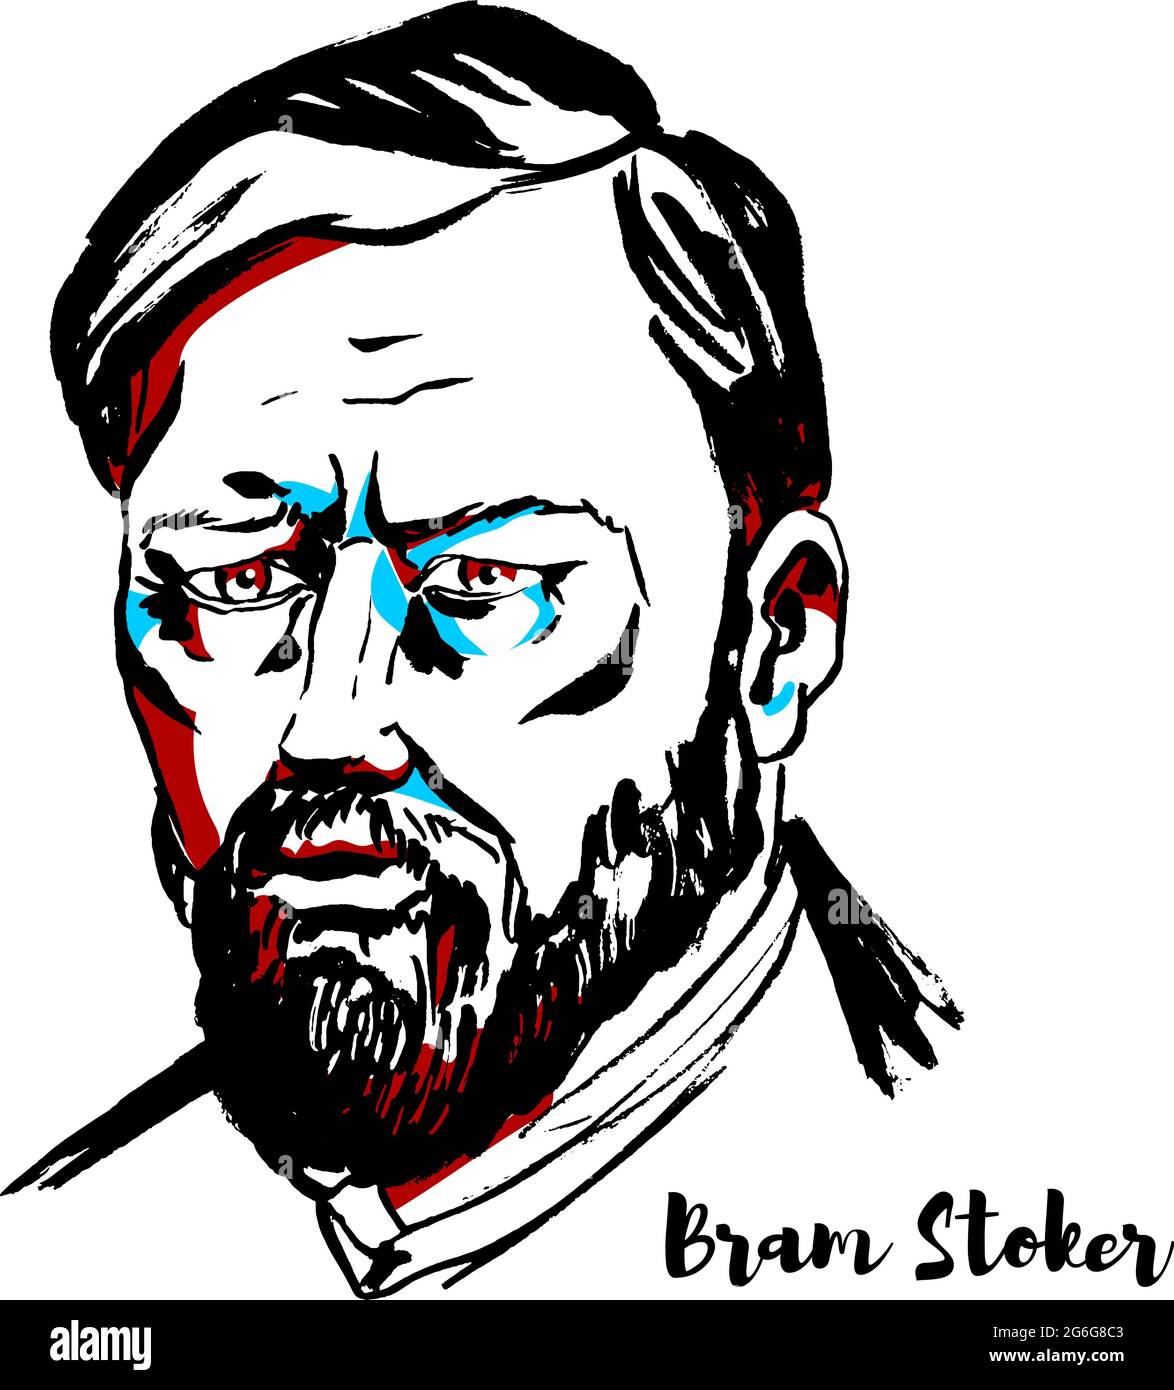 MOSCA, RUSSIA - 26 SETTEMBRE 2018: Bram Stoker ha inciso il ritratto vettoriale con i contorni dell'inchiostro. Autore irlandese, oggi più conosciuto per il suo romanzo gotico del 1897 Illustrazione Vettoriale